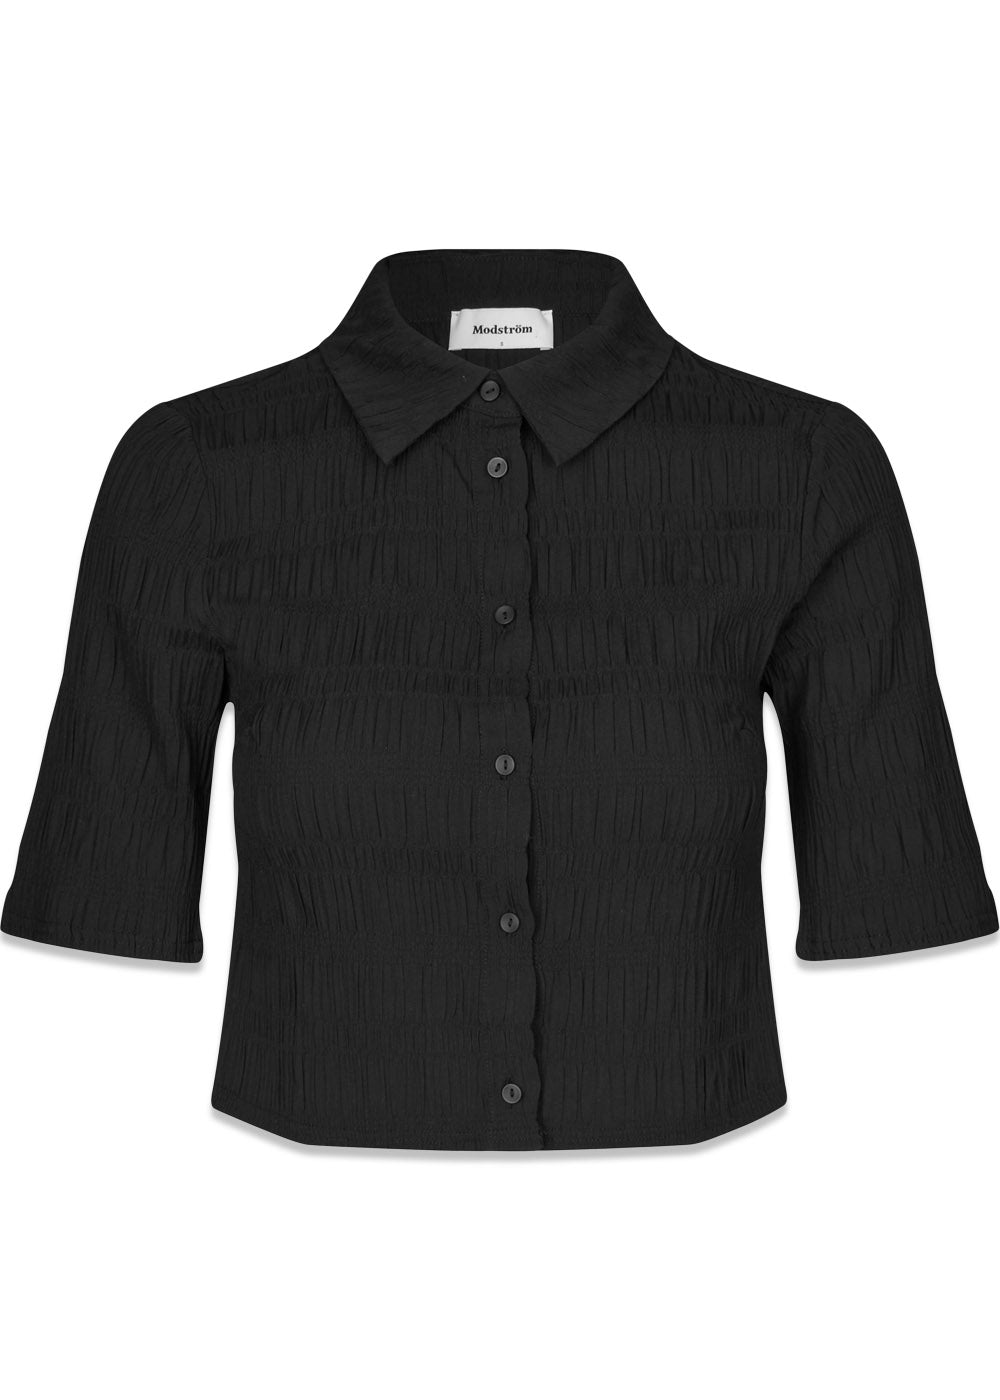 Modströms HamsonMD shirt - Black. Køb shirts her.